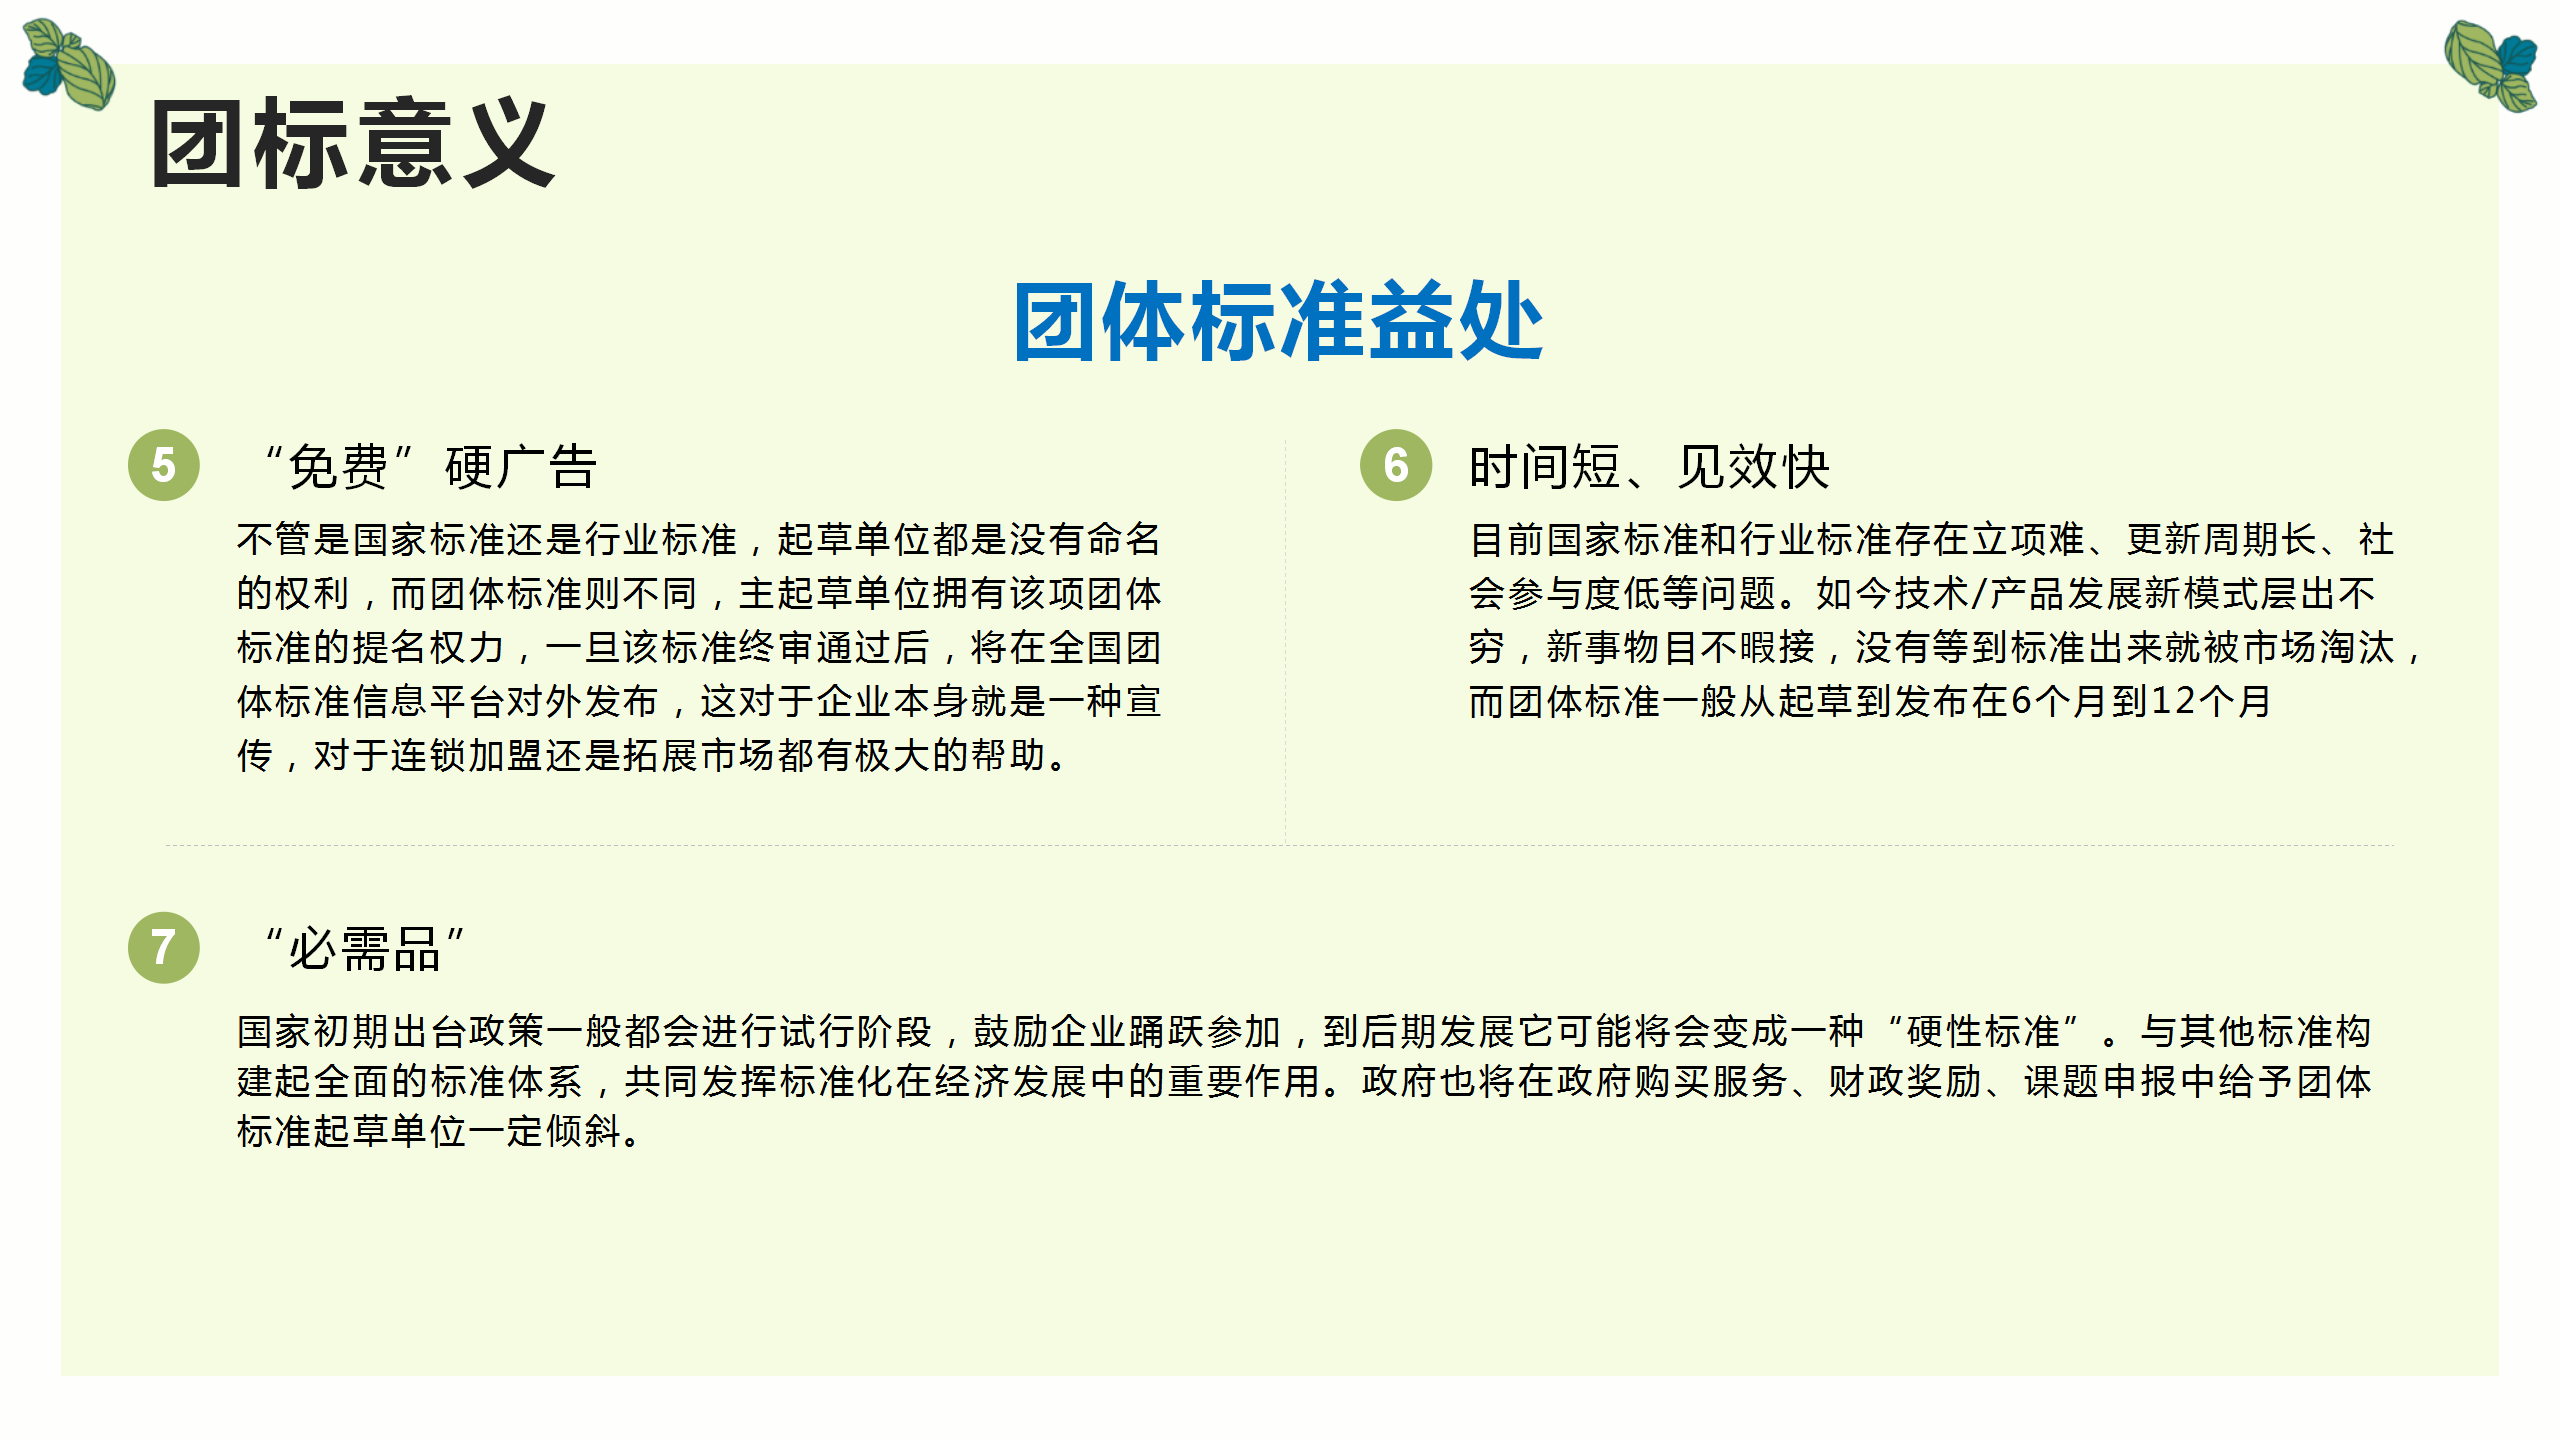 中国生命关怀协会健康服务标准工作委员会团体标准_17.png